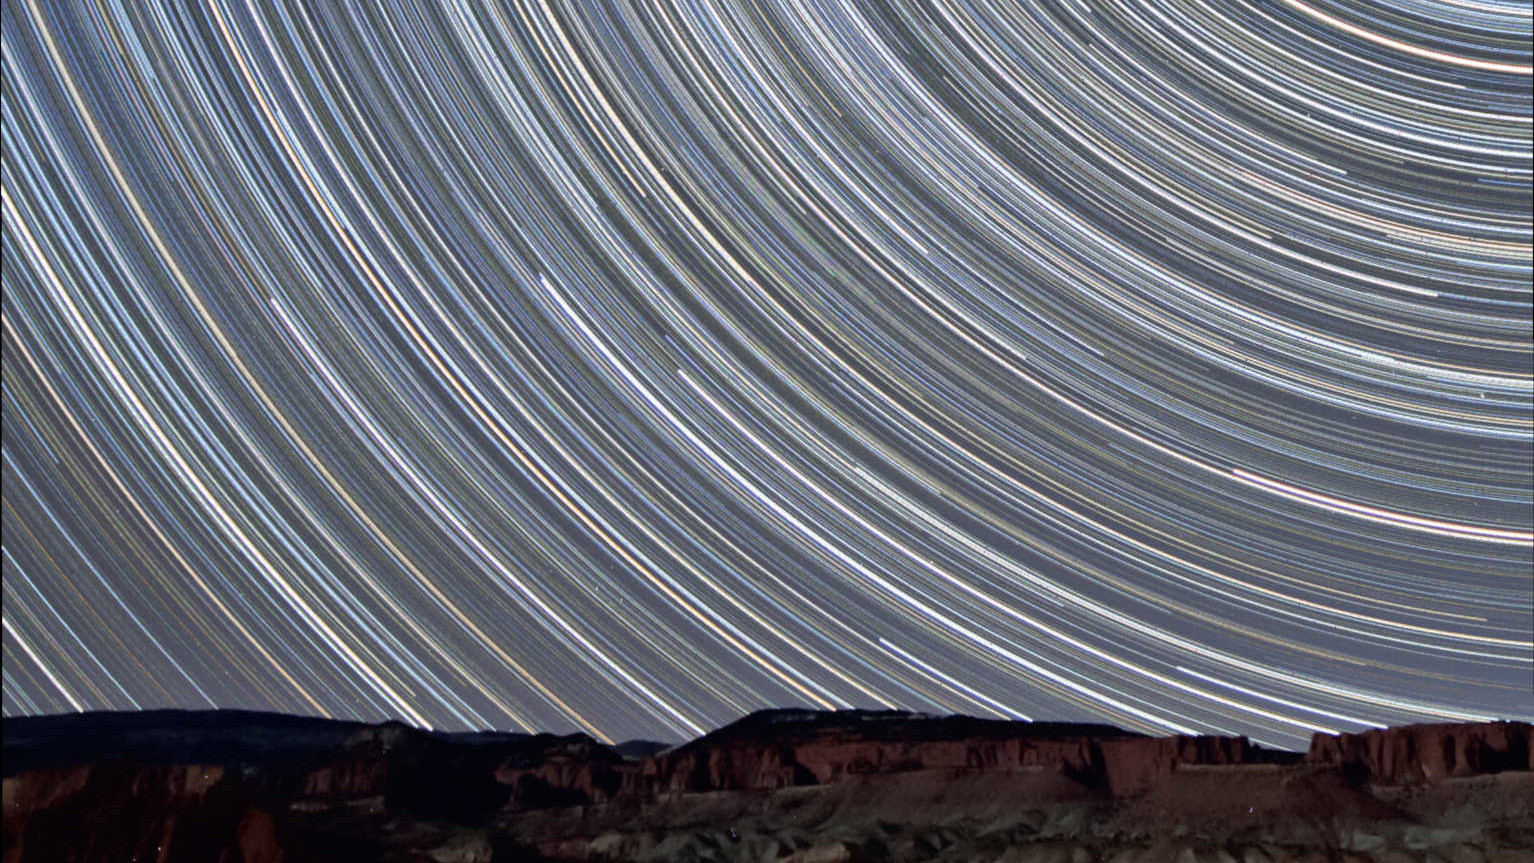 Kilka mil od parku narodowego Capitol Reef w Utah (USA). Te zdjęcia śladów gwiazd zostały wykonane w kierunku północnym. Gwiazdy wędrują nad oświetlonymi przez dopełniający się Księżyc czerwonymi skałami piaskowca. To sumaryczny obraz z 350 zdjęć, z których każde zostało wykonane z czasem naświetlania 90 sekund (łączny czas ekspozycji: 525 minut = 8,75 godziny). Zdjęcie wykonano obiektywem 10-20mm (@10mm f/4) i DSLR Canon 450D. U. Dittler